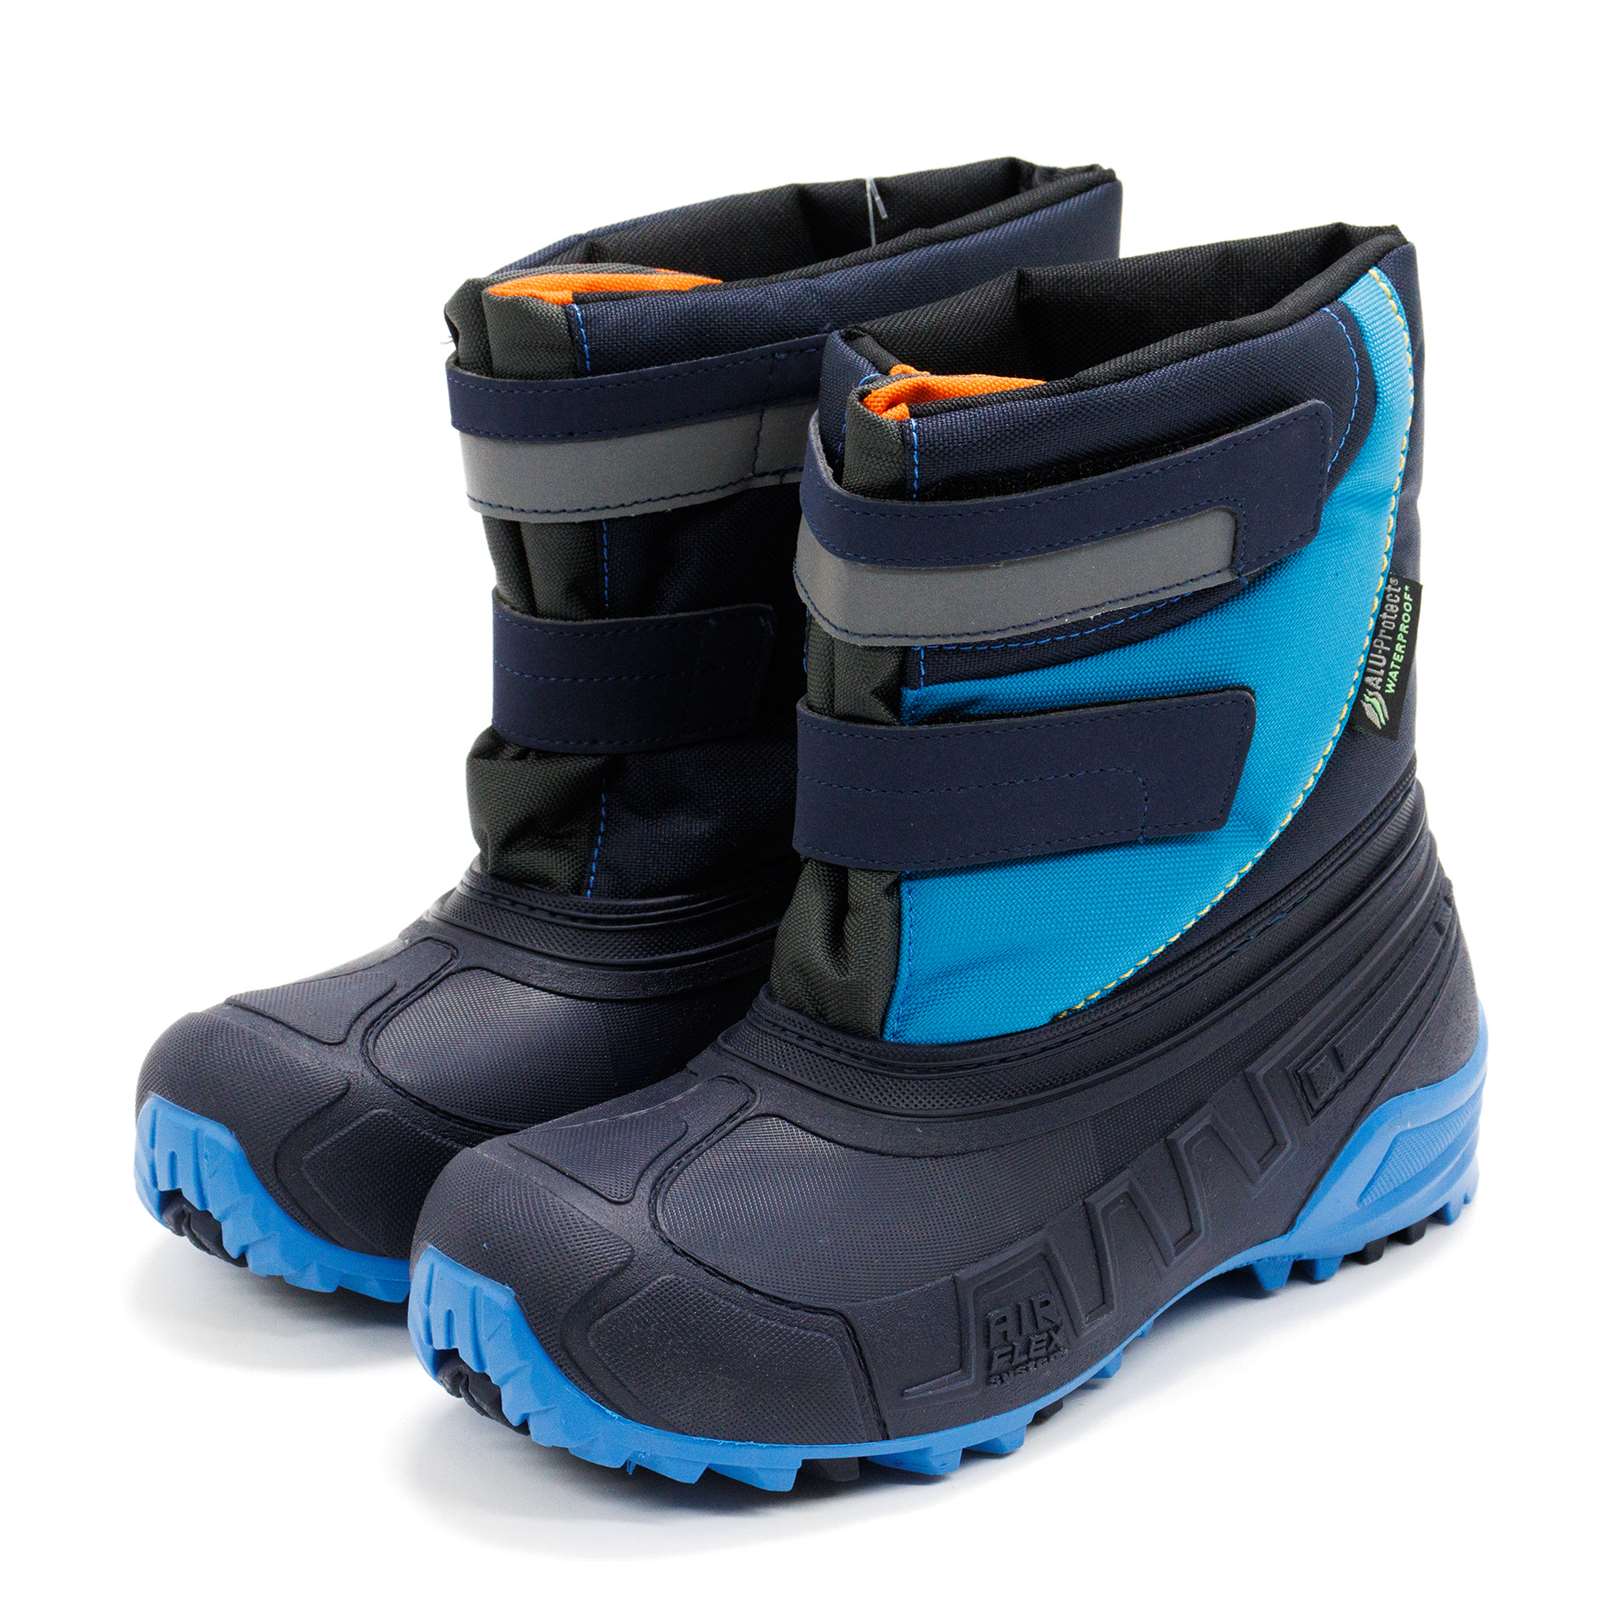 Boatilus Boy Hybrid02 Waterproof Boots